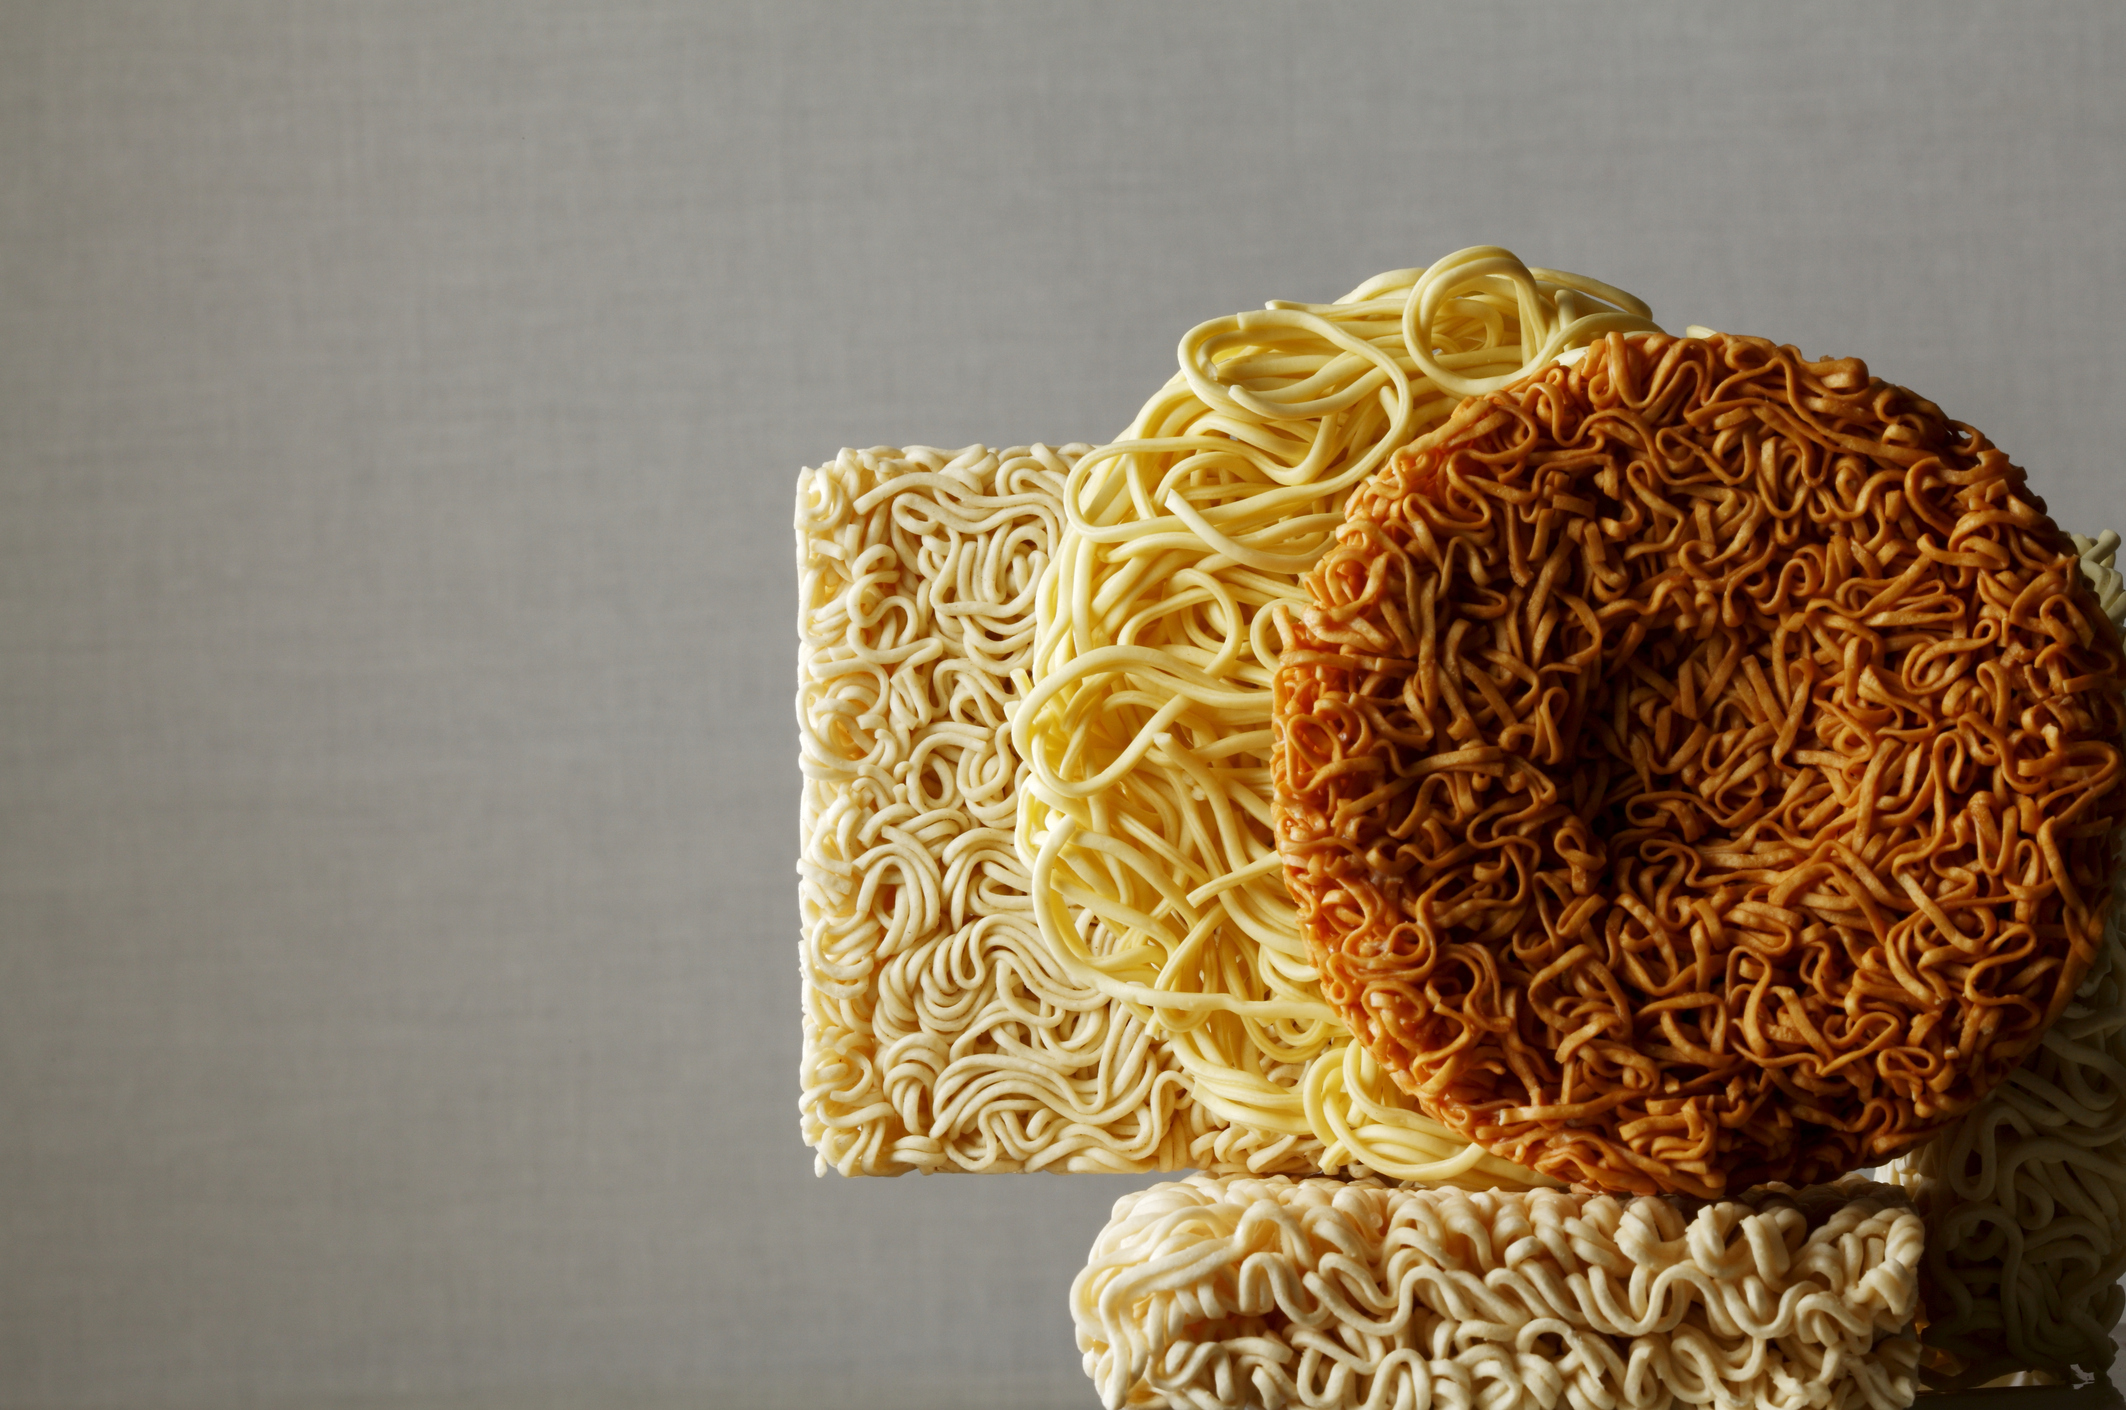 Comparison of instant noodles